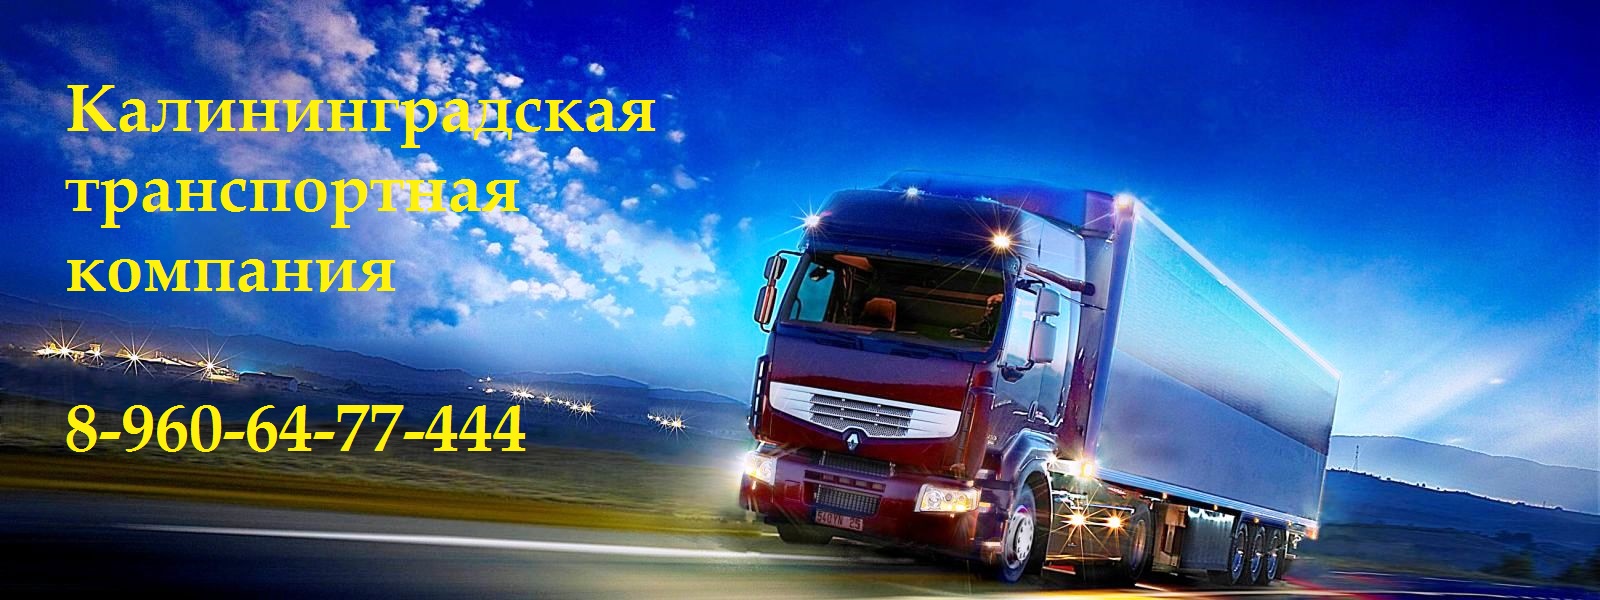 Калининградская транспортная компания